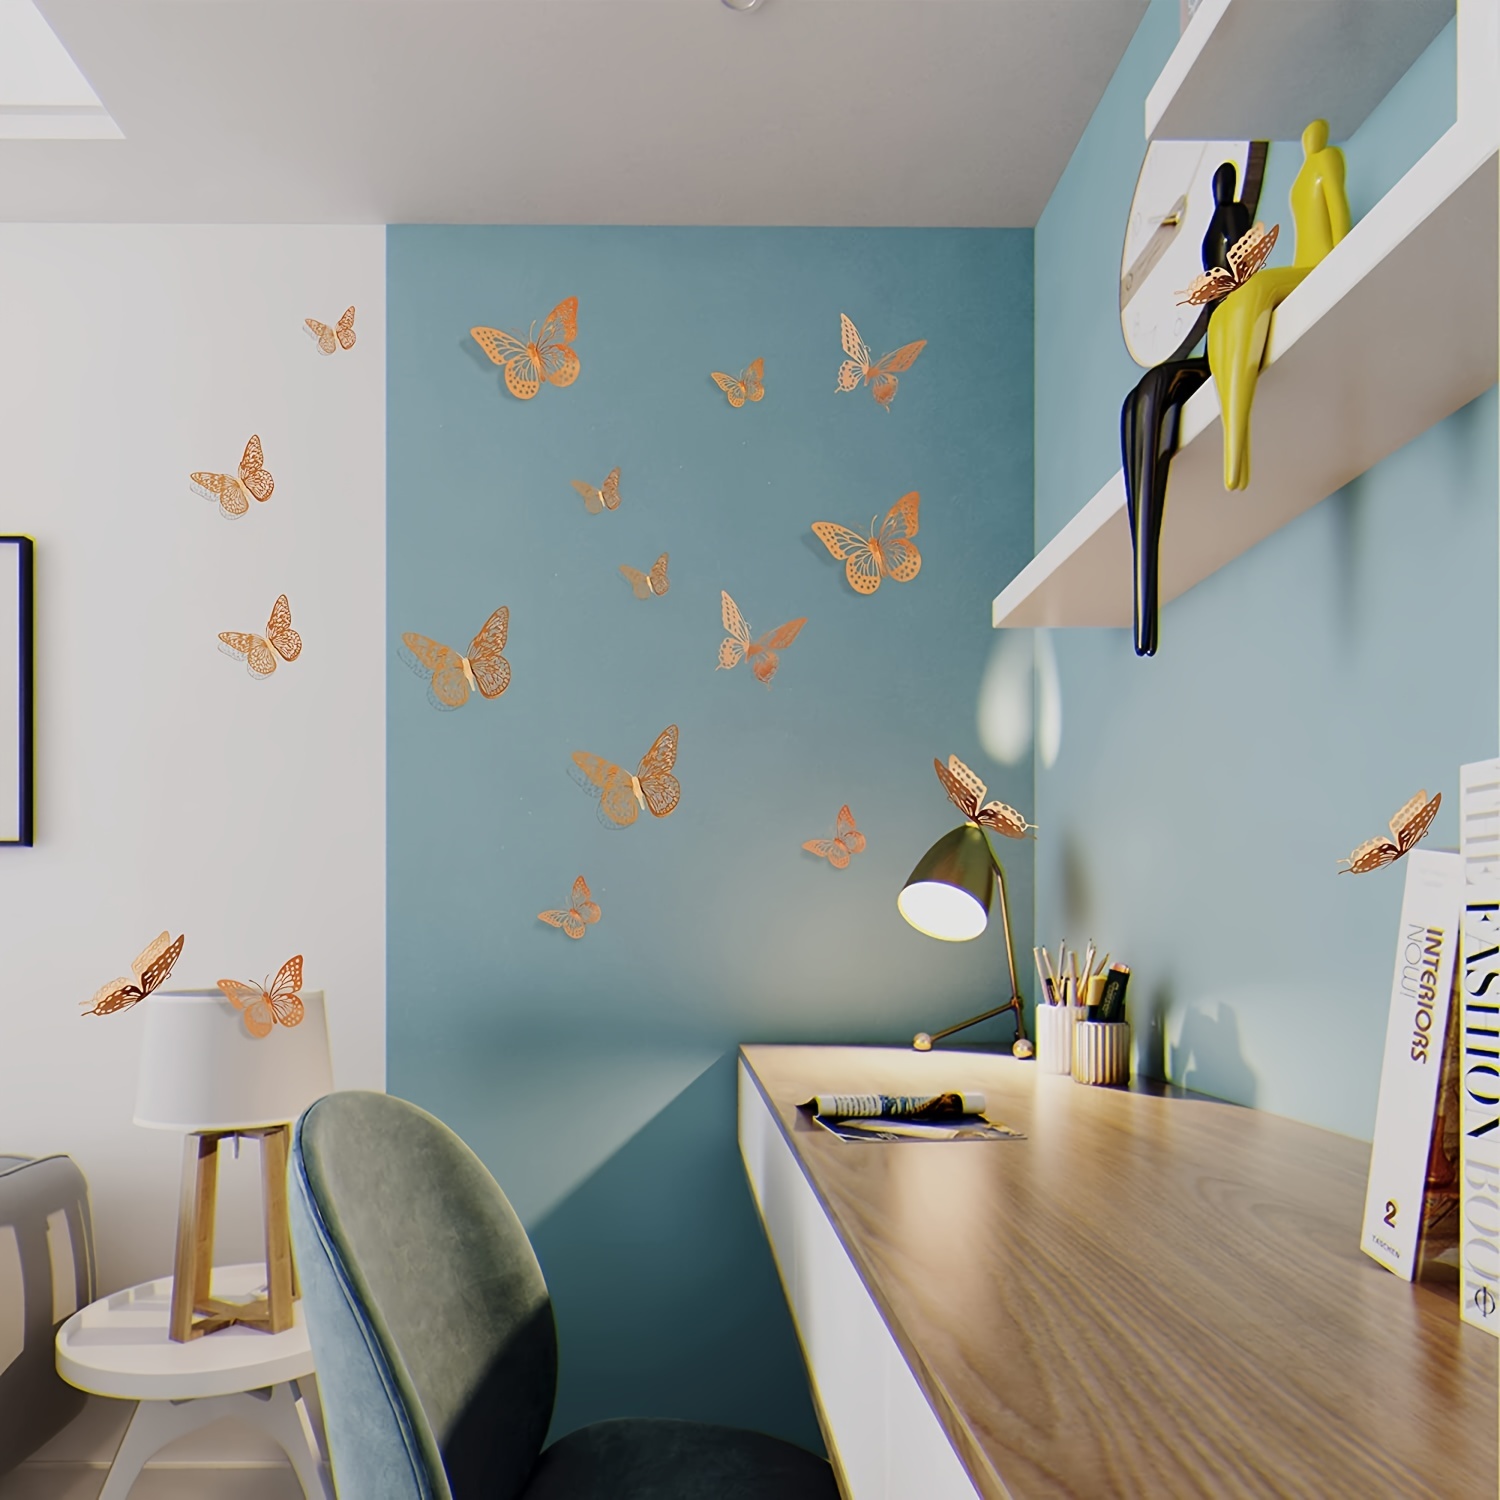 Décalque Autocollant Mural Chambre 12 Pièces 3D Papillon Maison Décoration